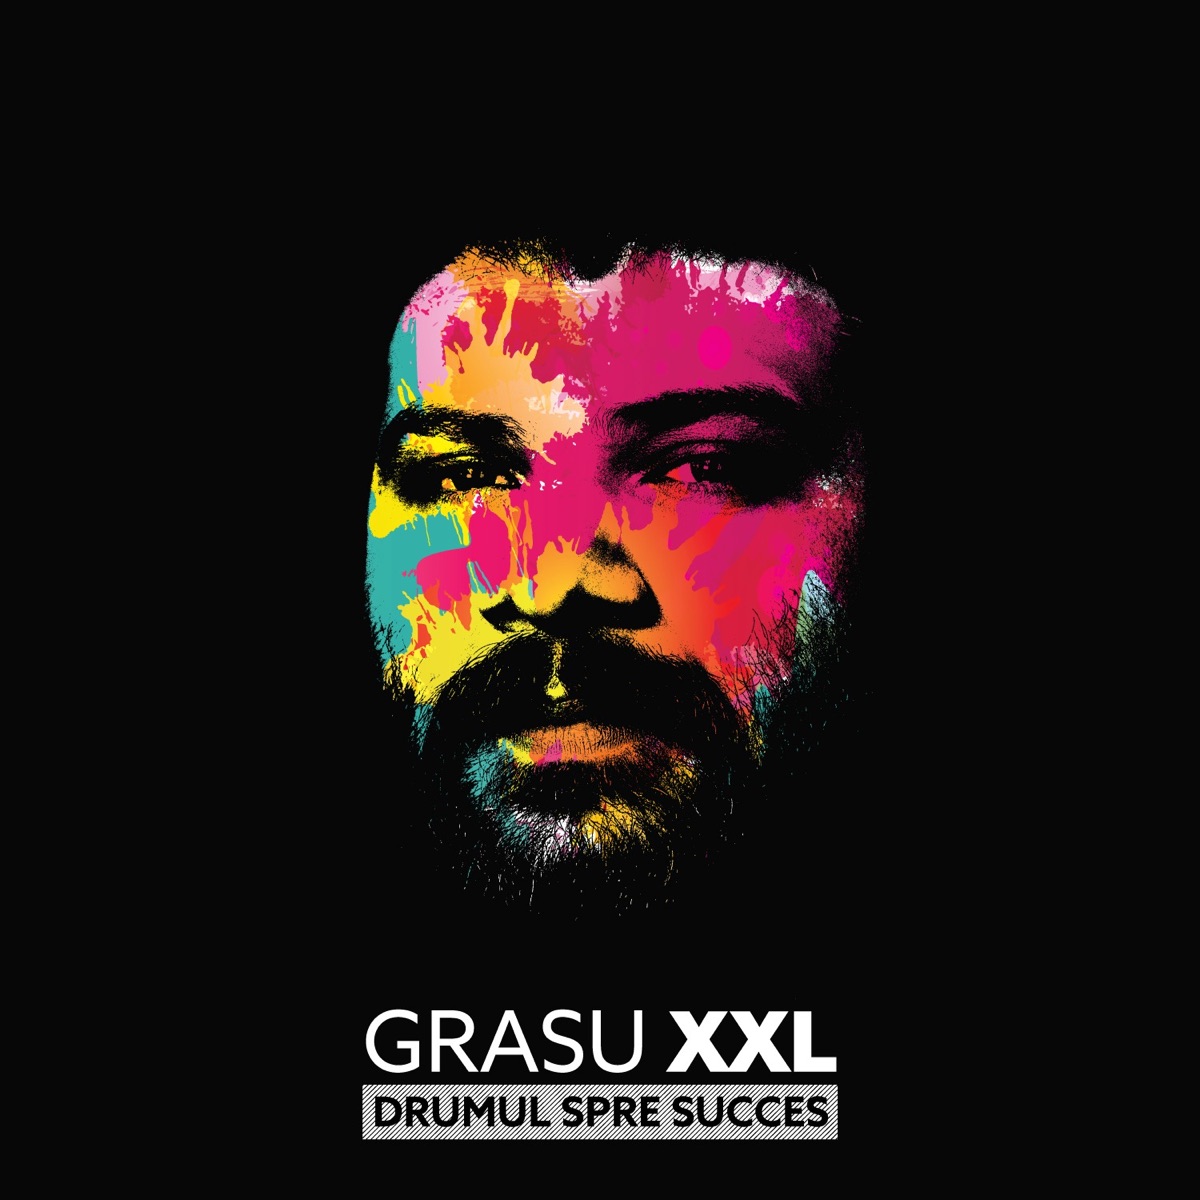 În Labirint - Album by Grasu XXL & Guess Who - Apple Music